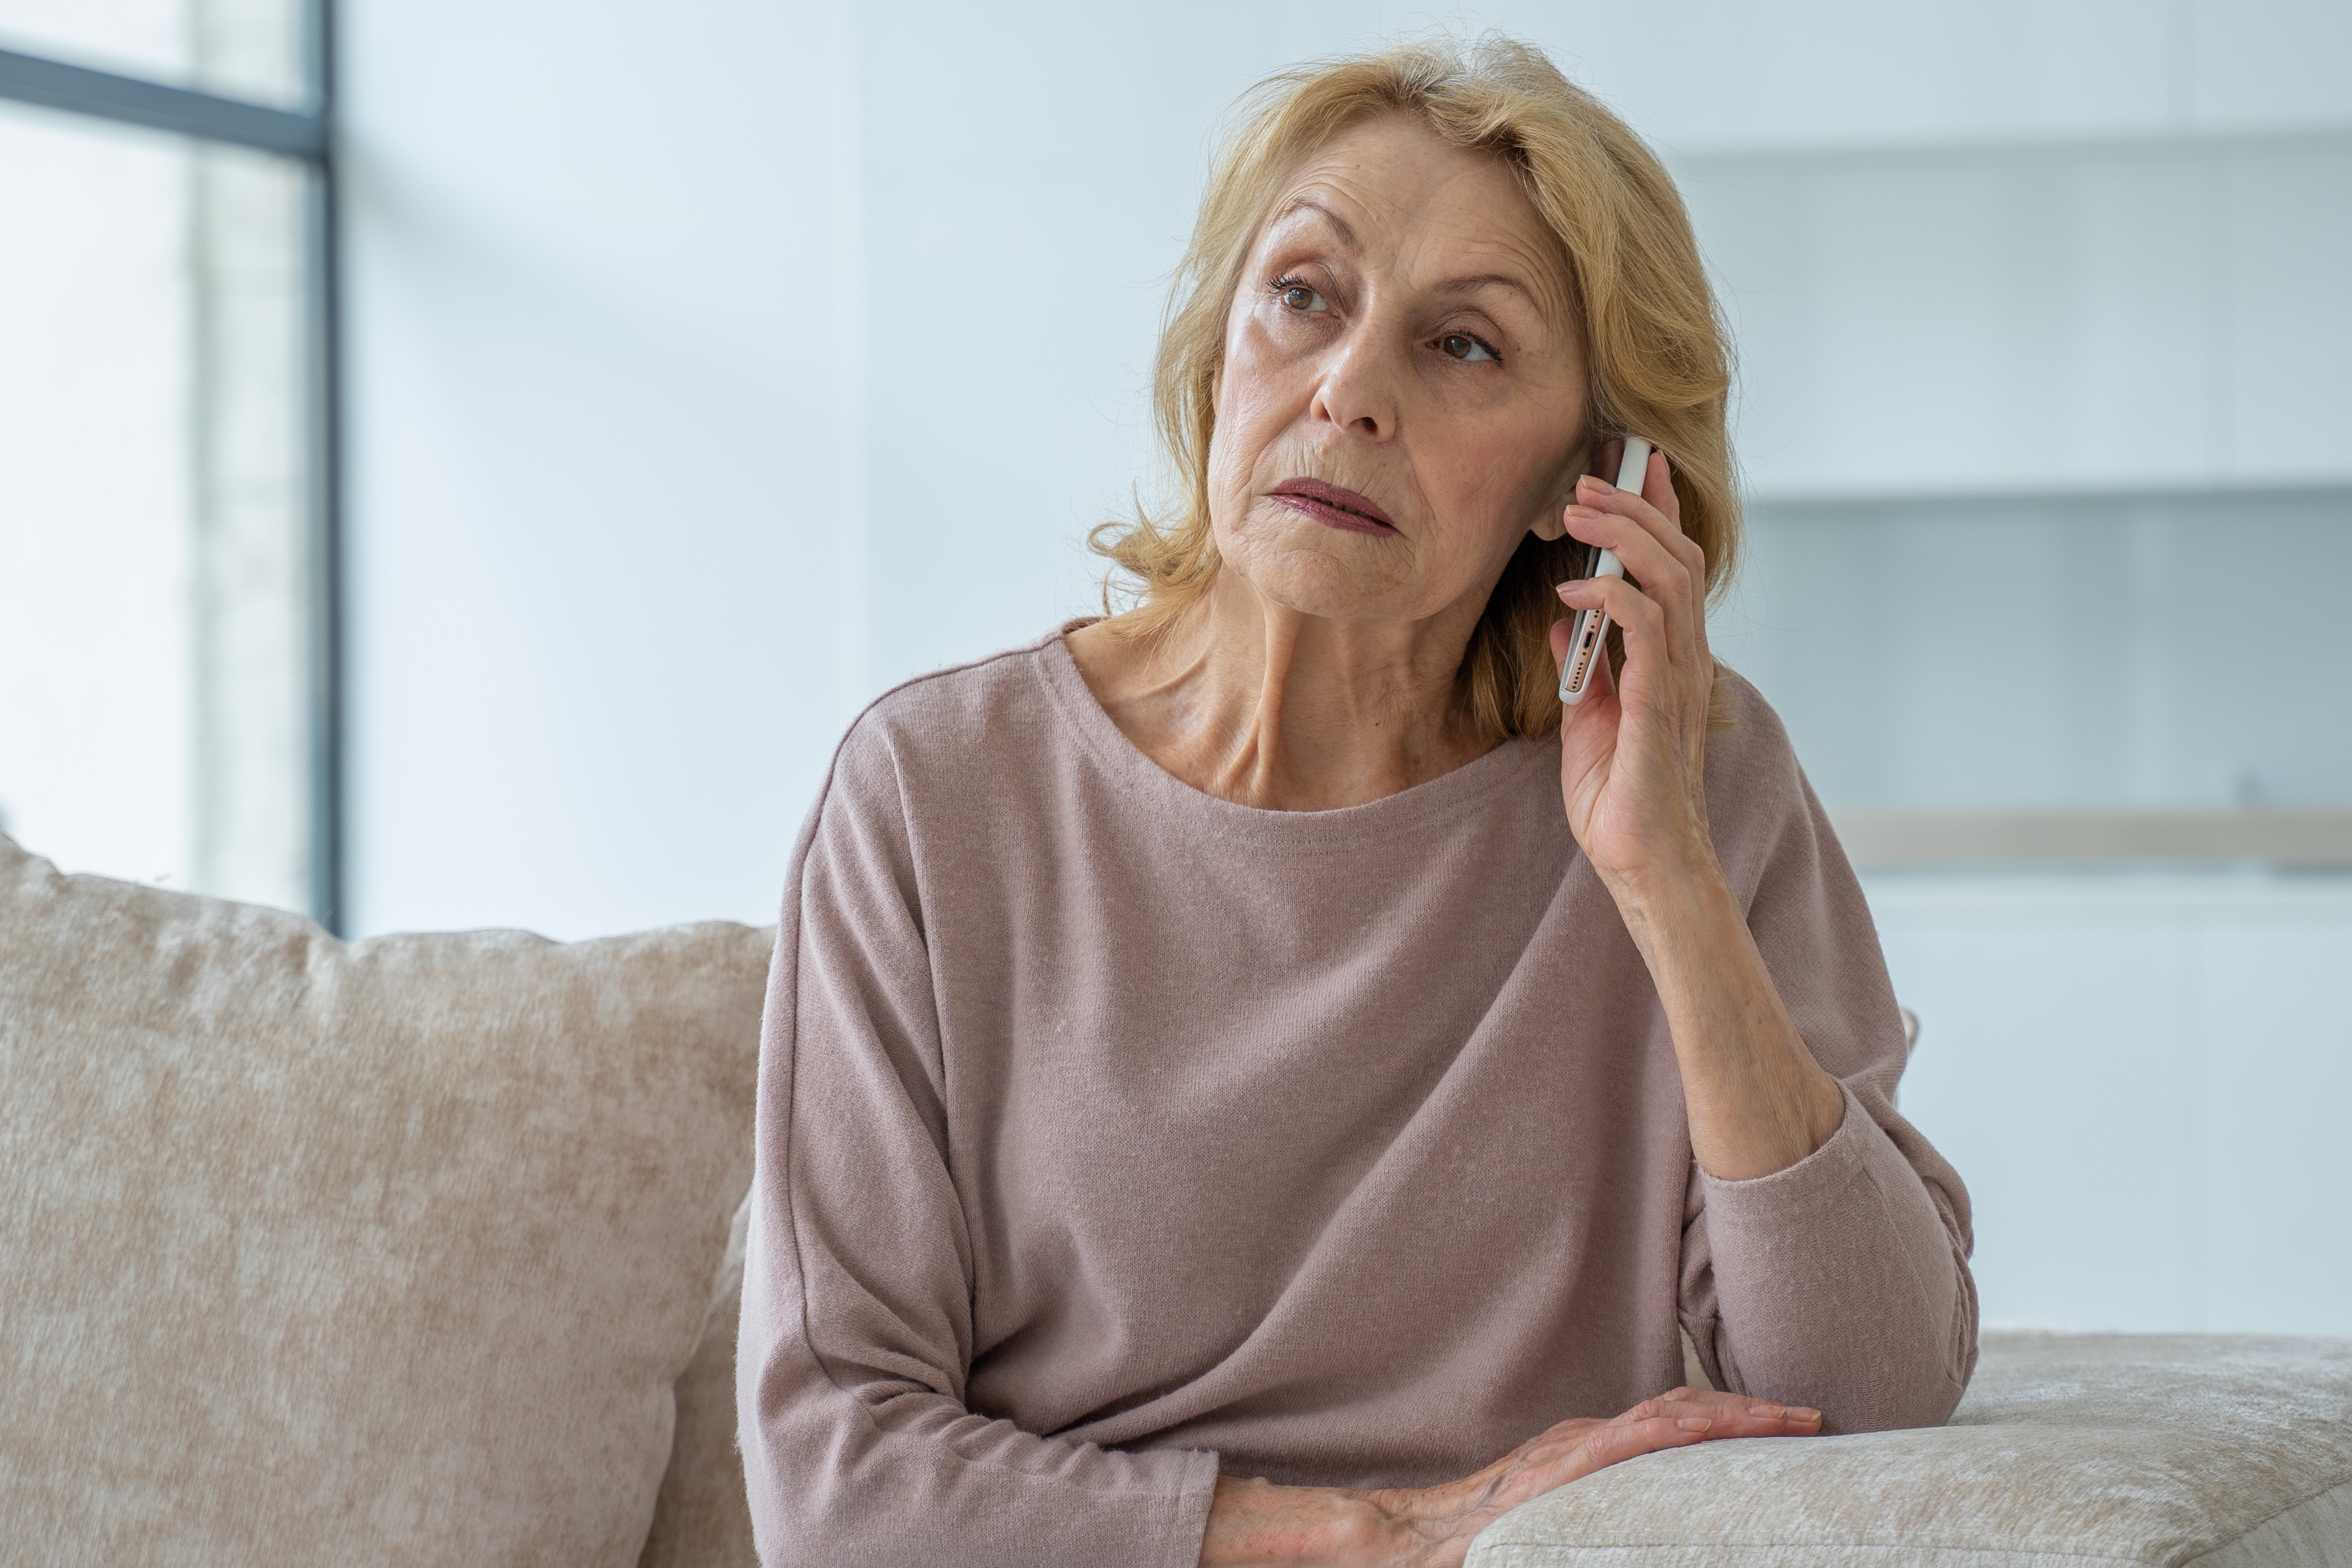 Una mujer hablando por teléfono | Fuente: Shutterstock